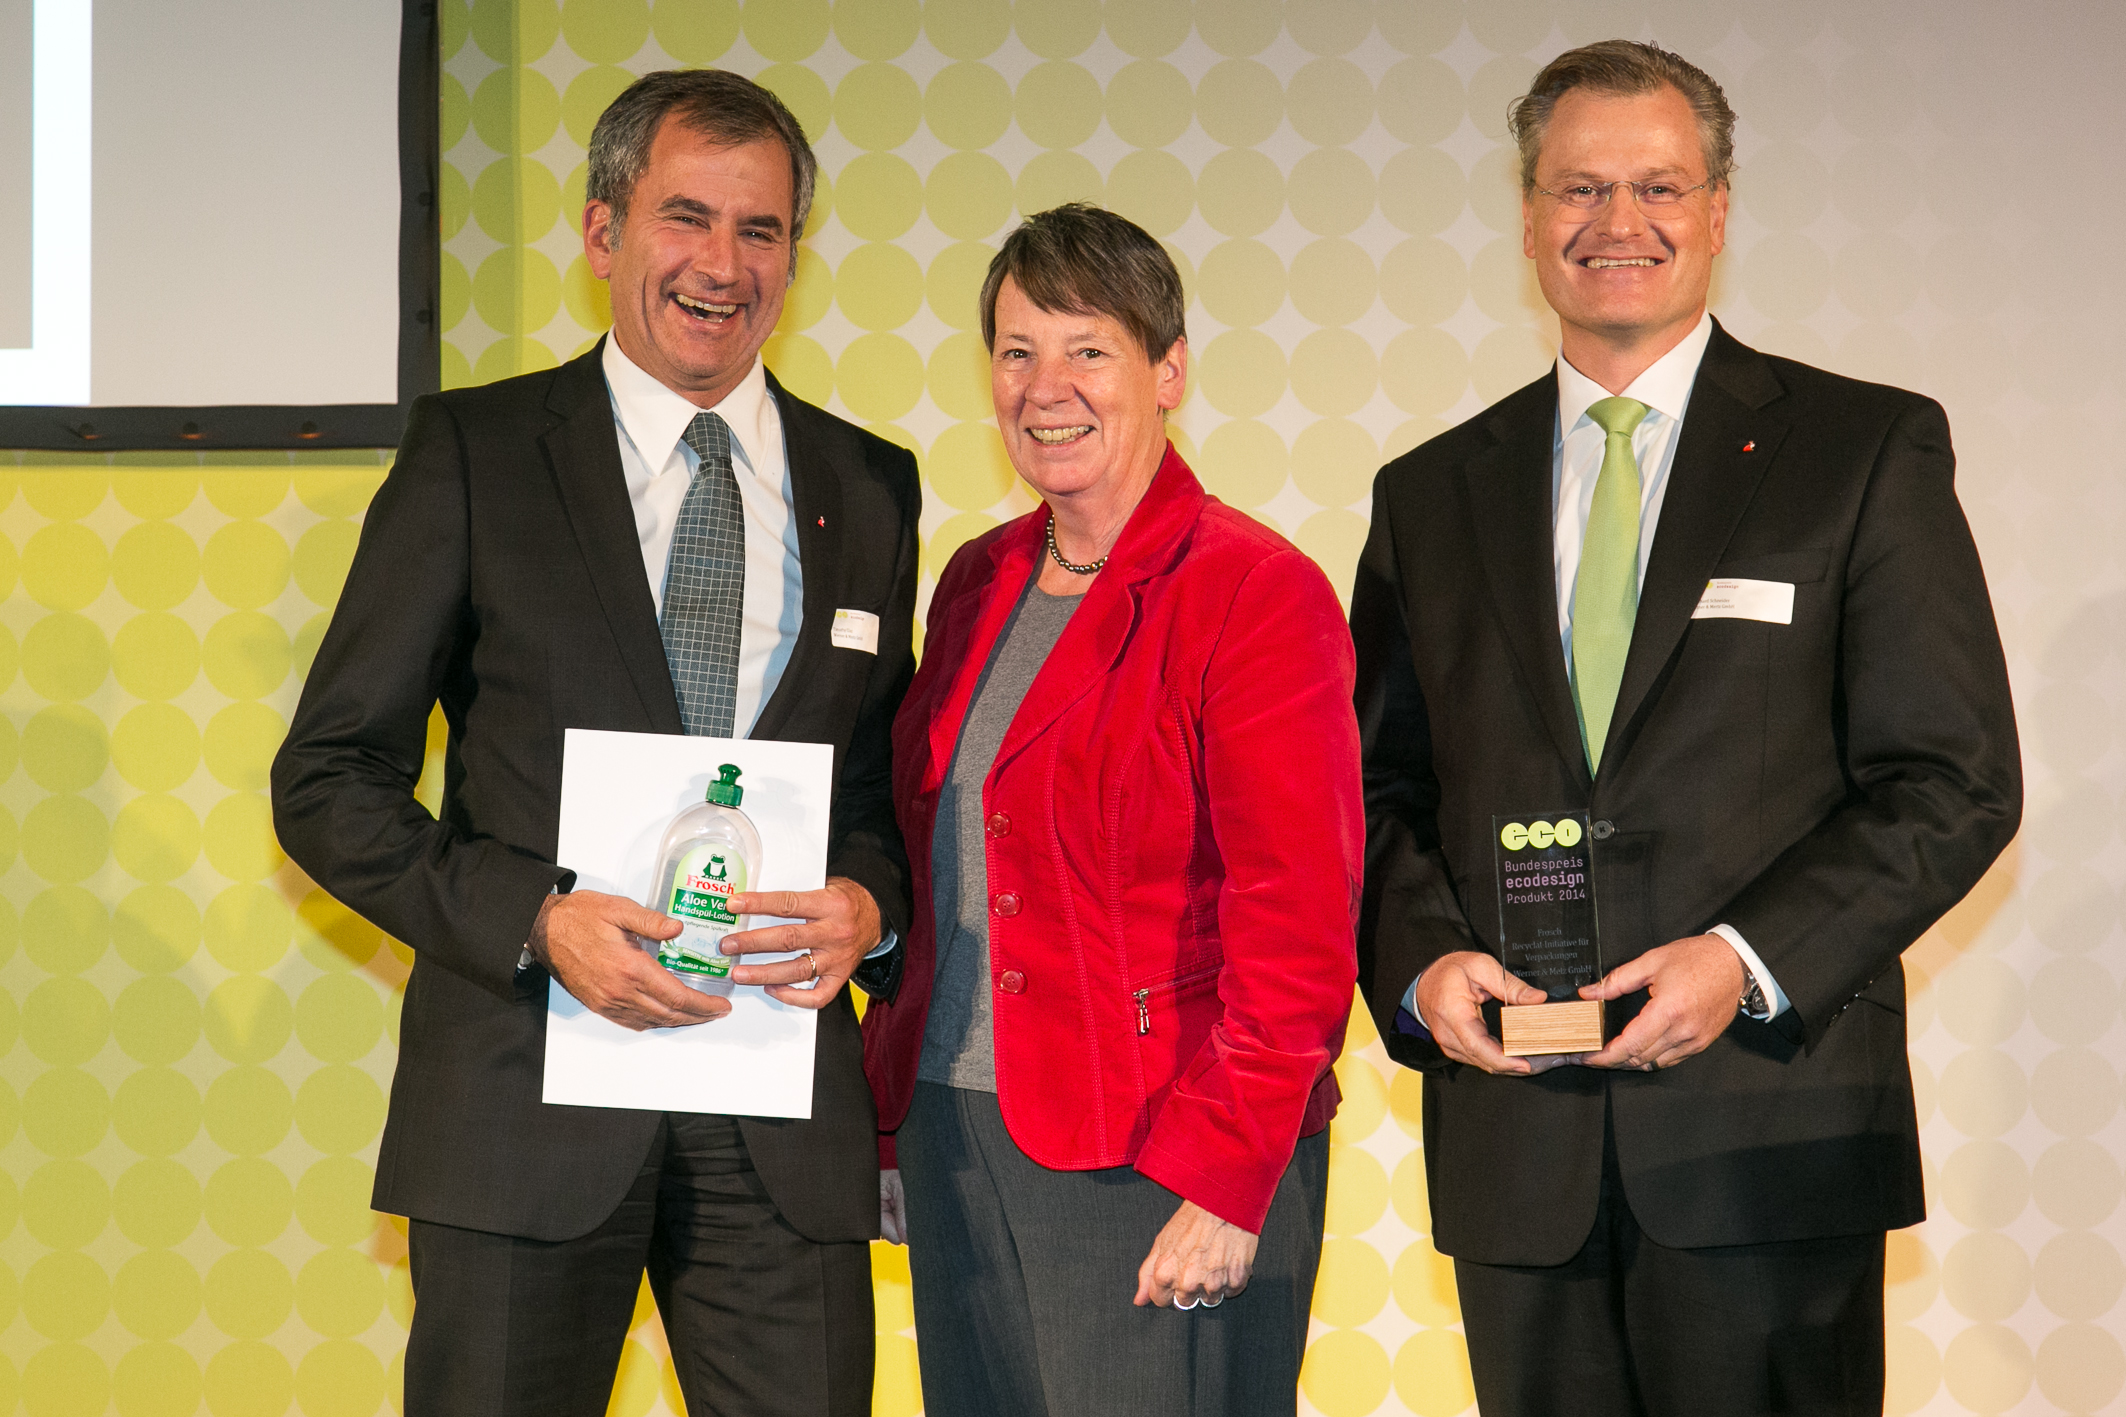 Bundespreis Ecodesign 2014 Dr. Barbara Hendricks mit den Preisträgern der Werner & Merz GmbH 